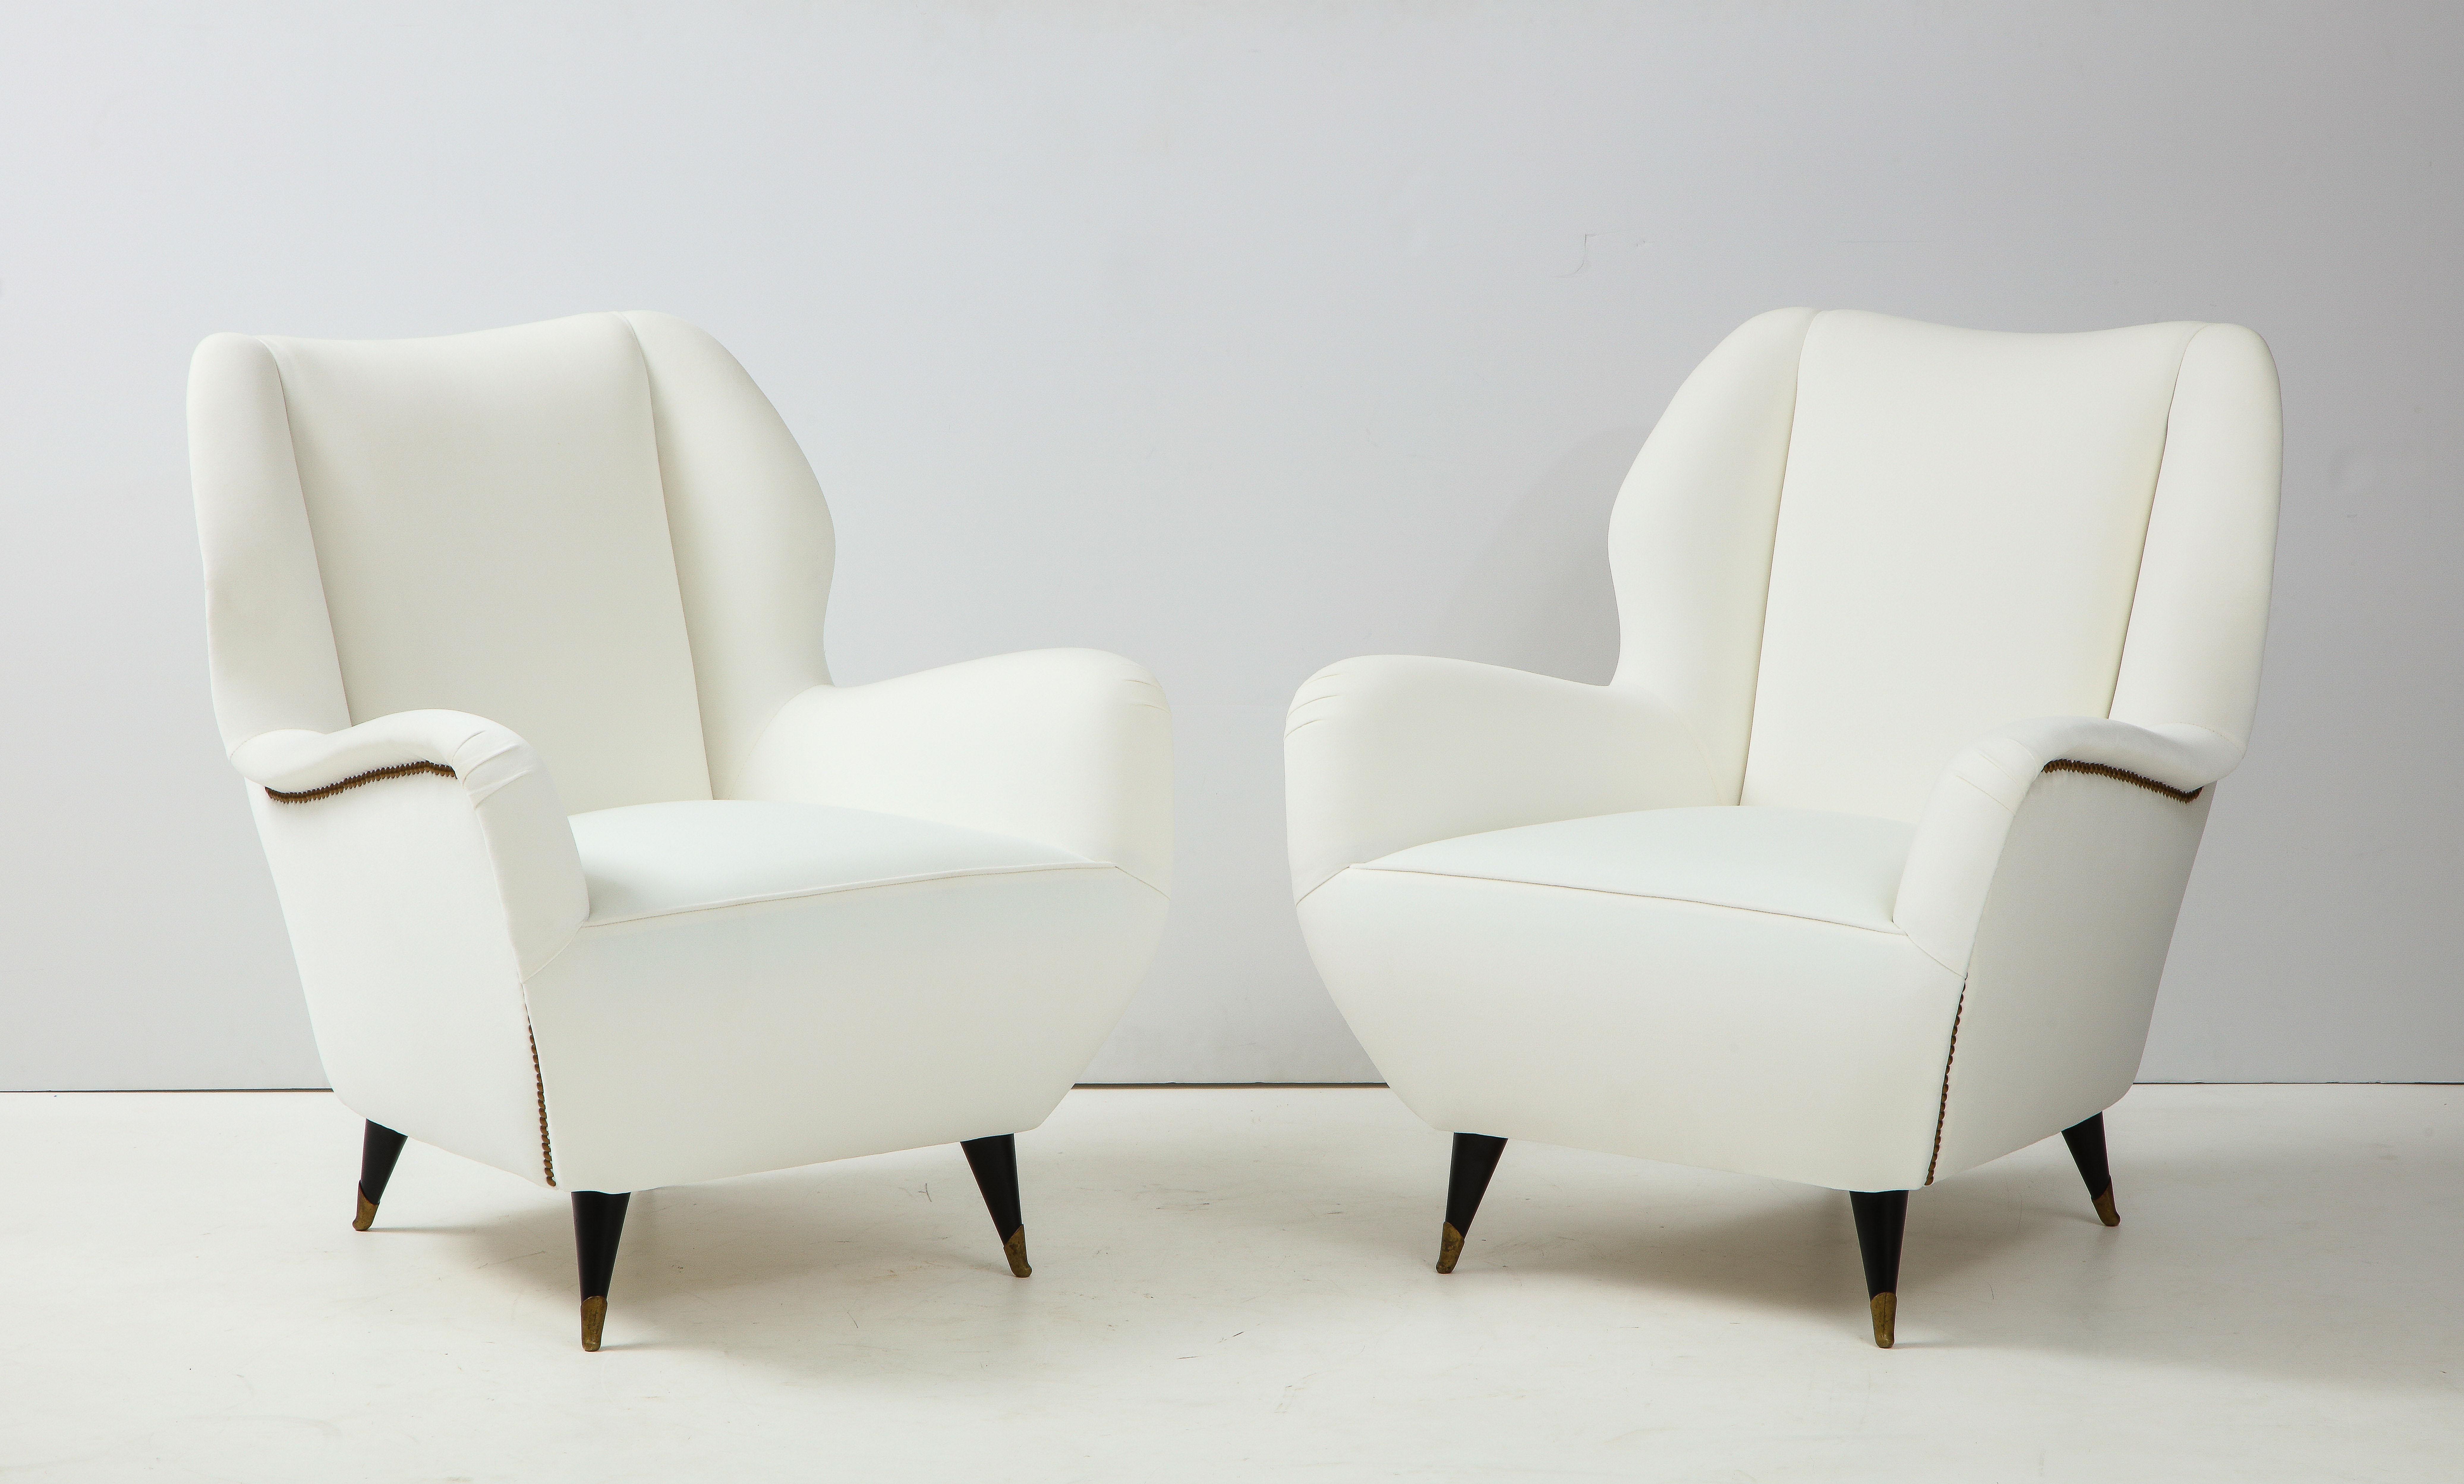 Ein sehr elegantes Paar italienischer Vintage-Loungesessel aus der Mitte des Jahrhunderts; ihre sehr skulpturale Form wird durch speziell entworfene Messingnagelköpfe ergänzt. Schön proportioniert mit einem bequemen und breiten Sitz, wird das Ganze